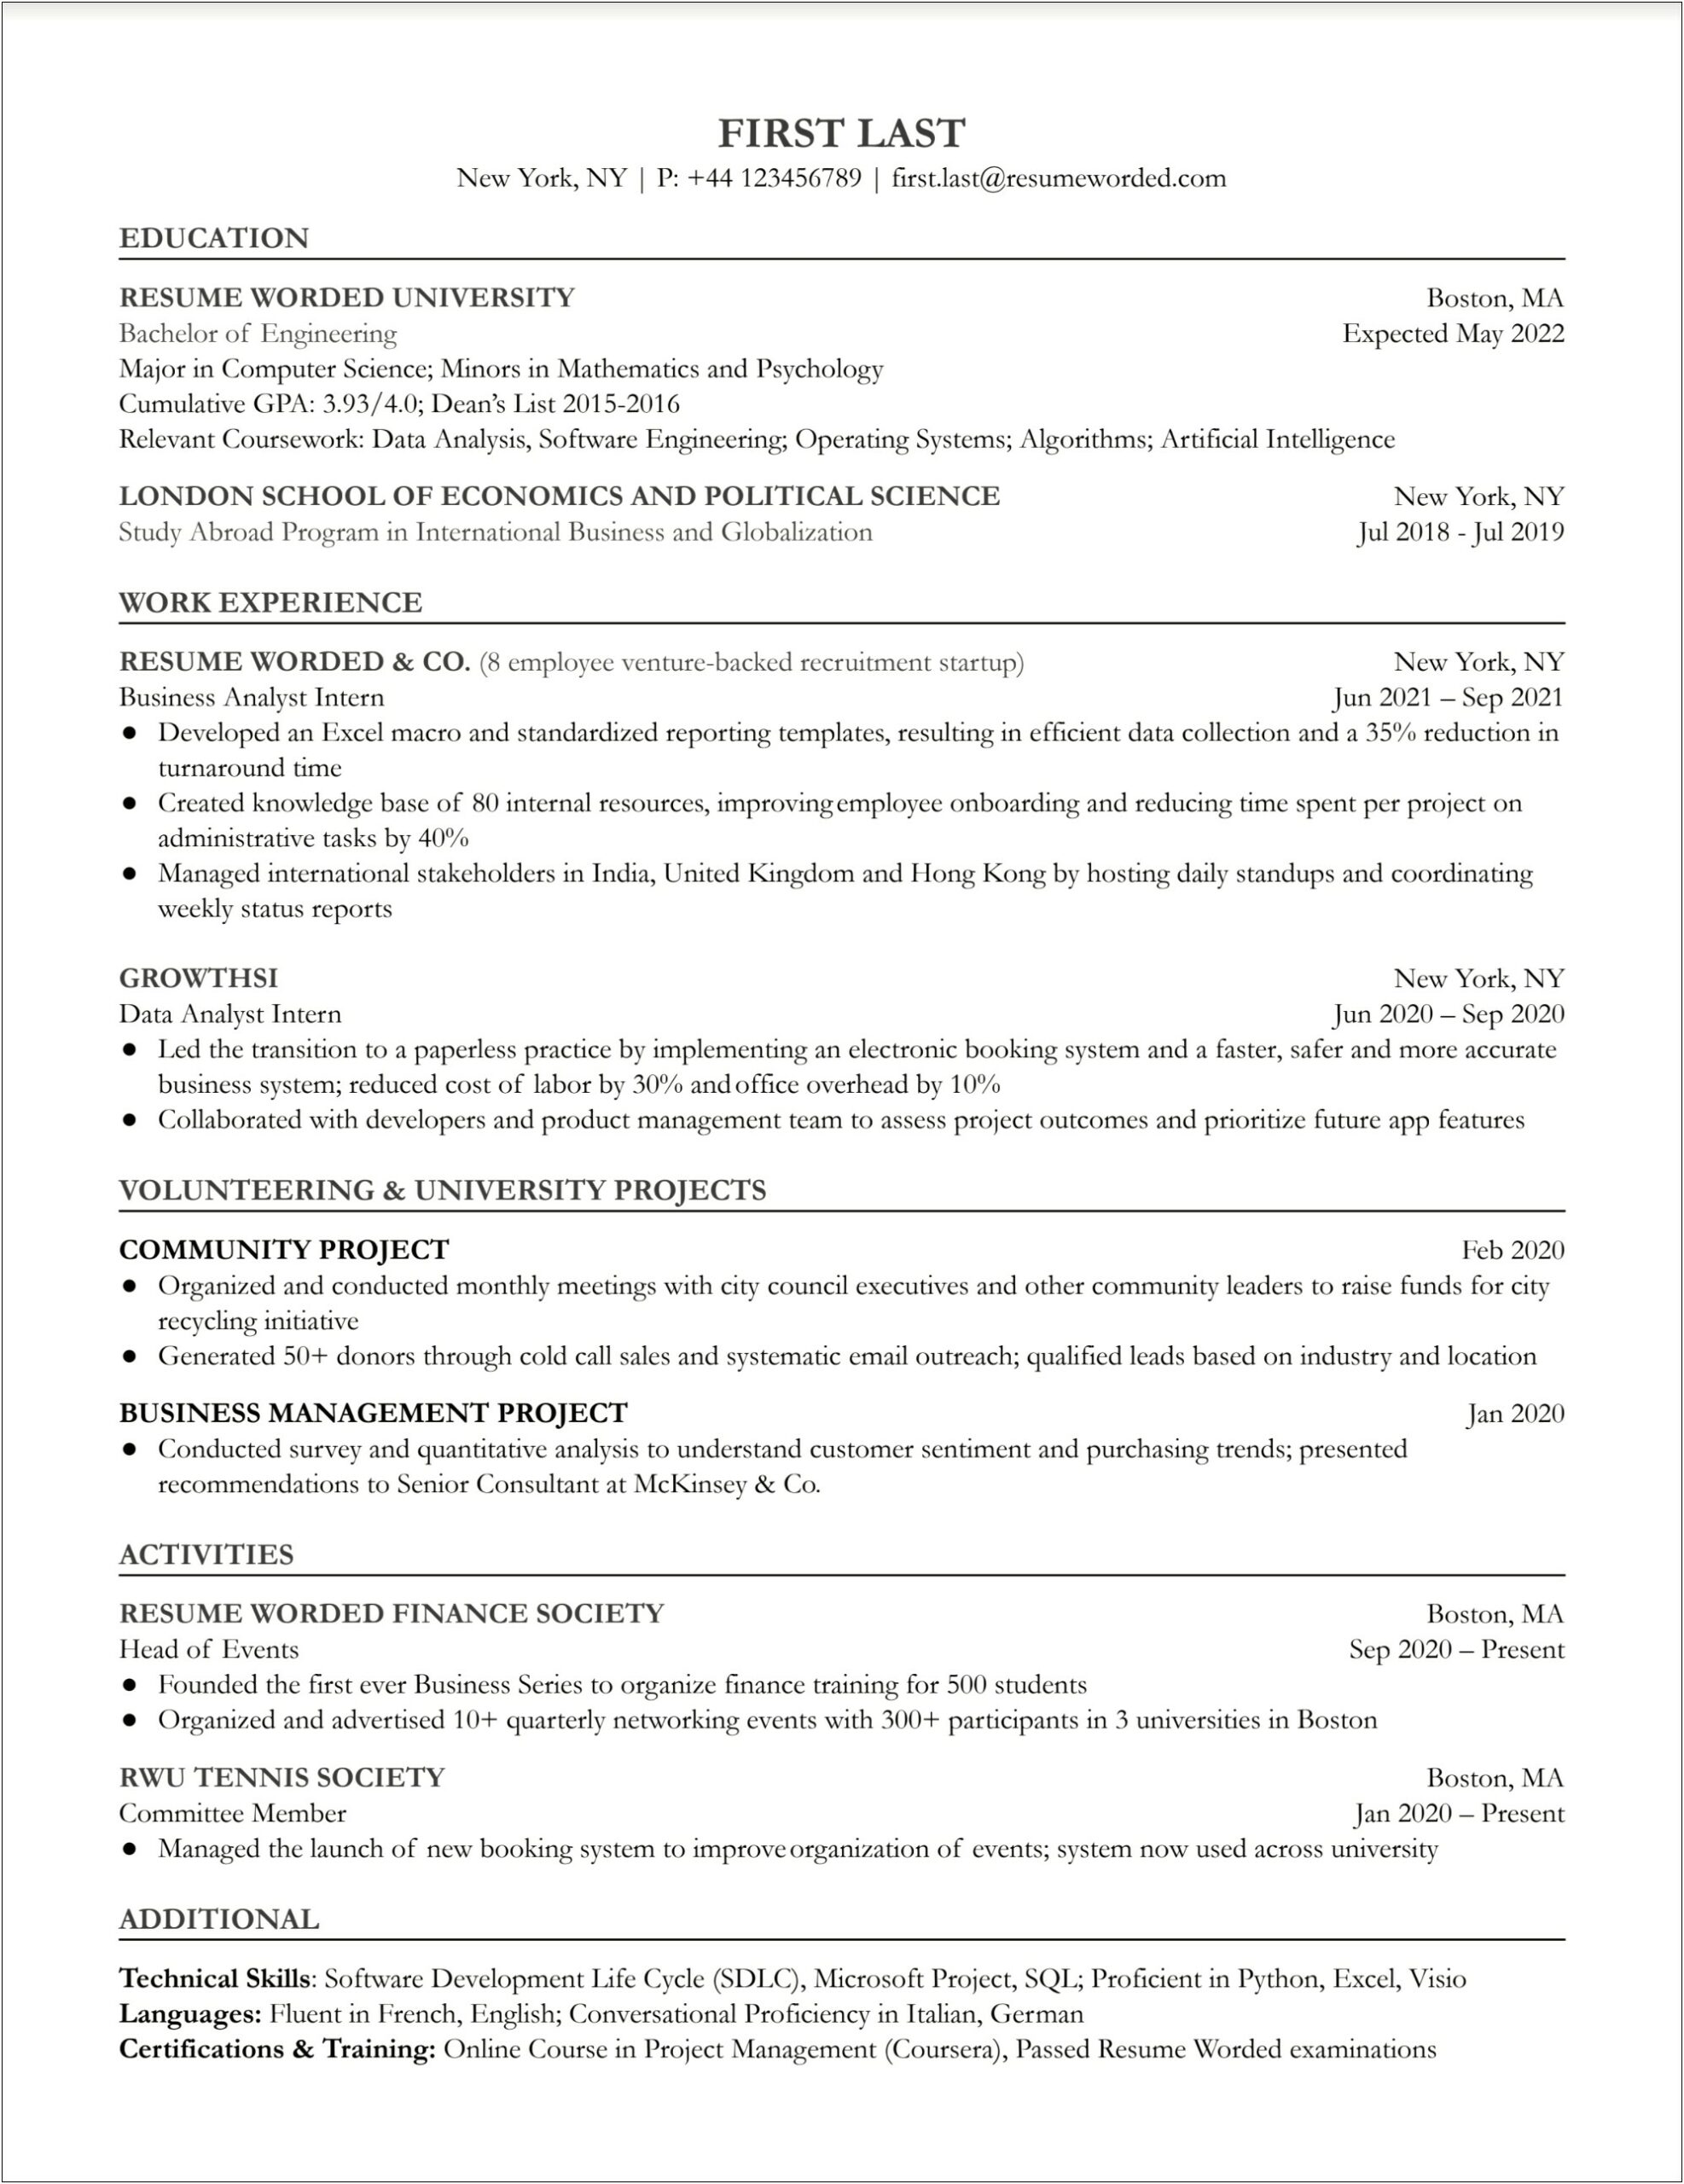 Ba 500 Job Description Resume Paper